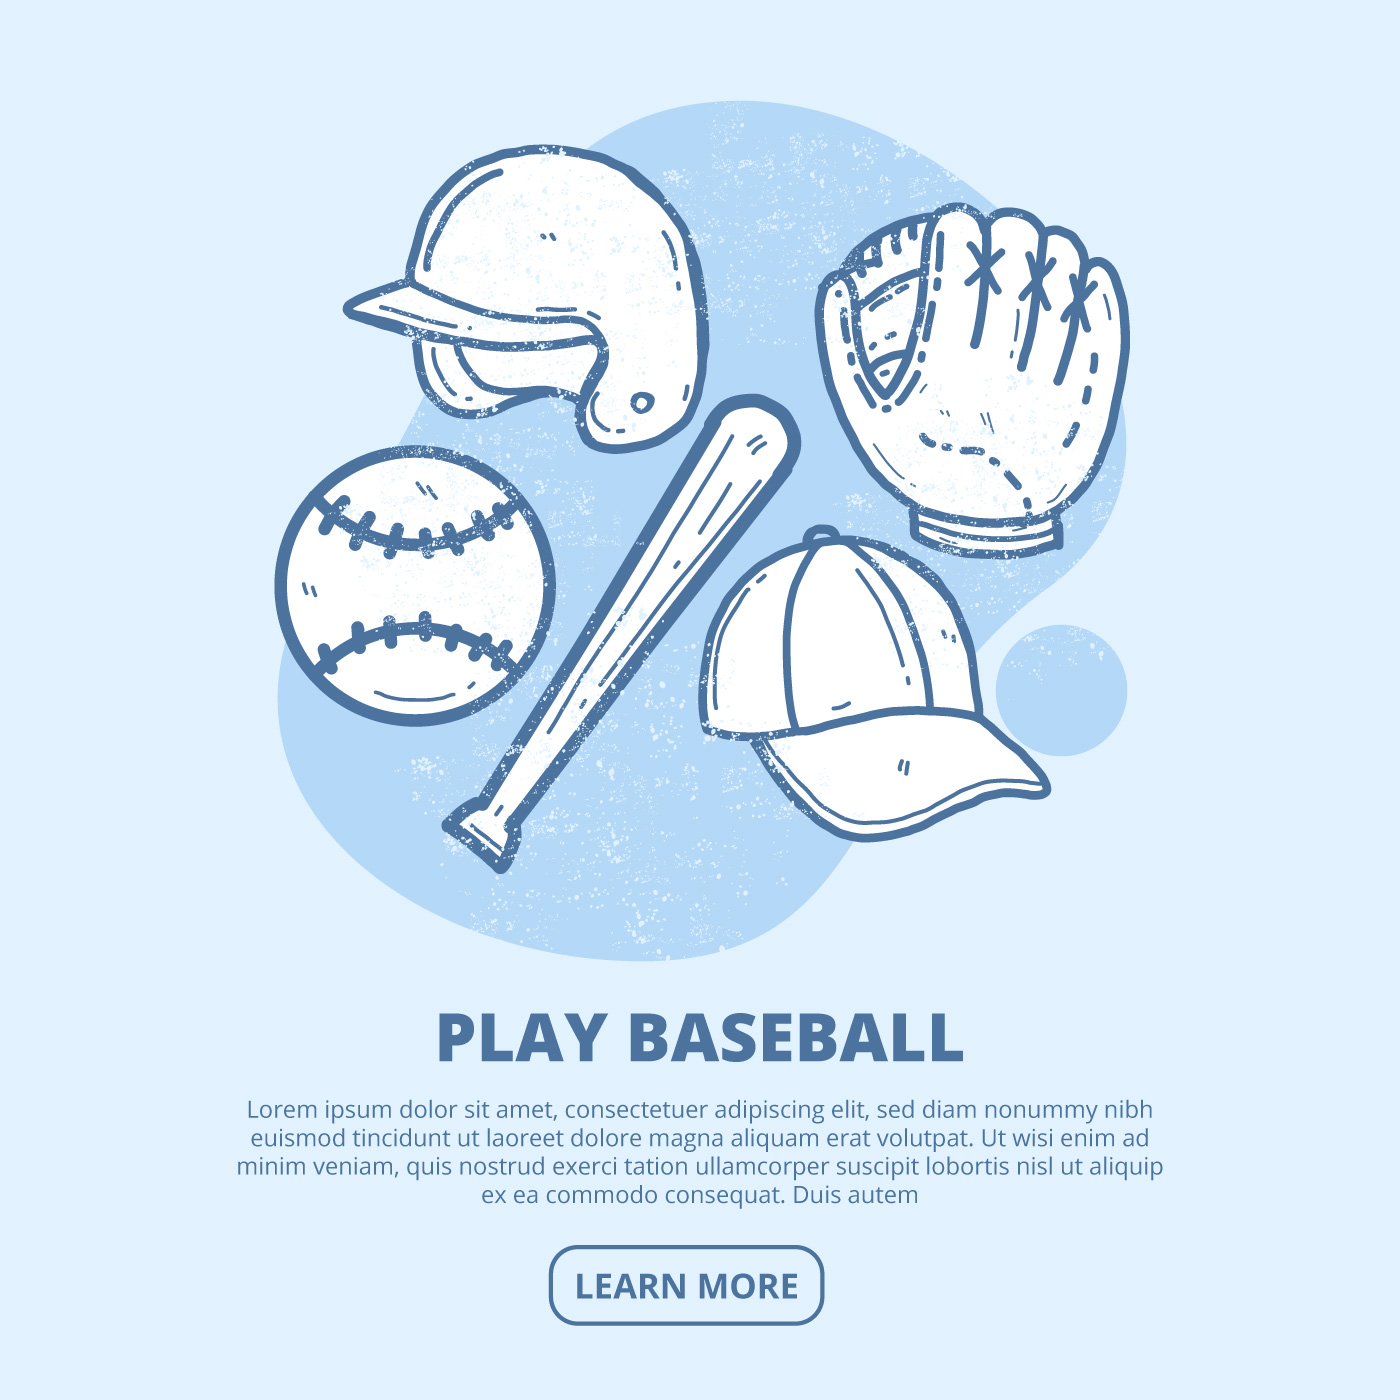 Download Vintage Baseball Vector Illustration - Download Free ...